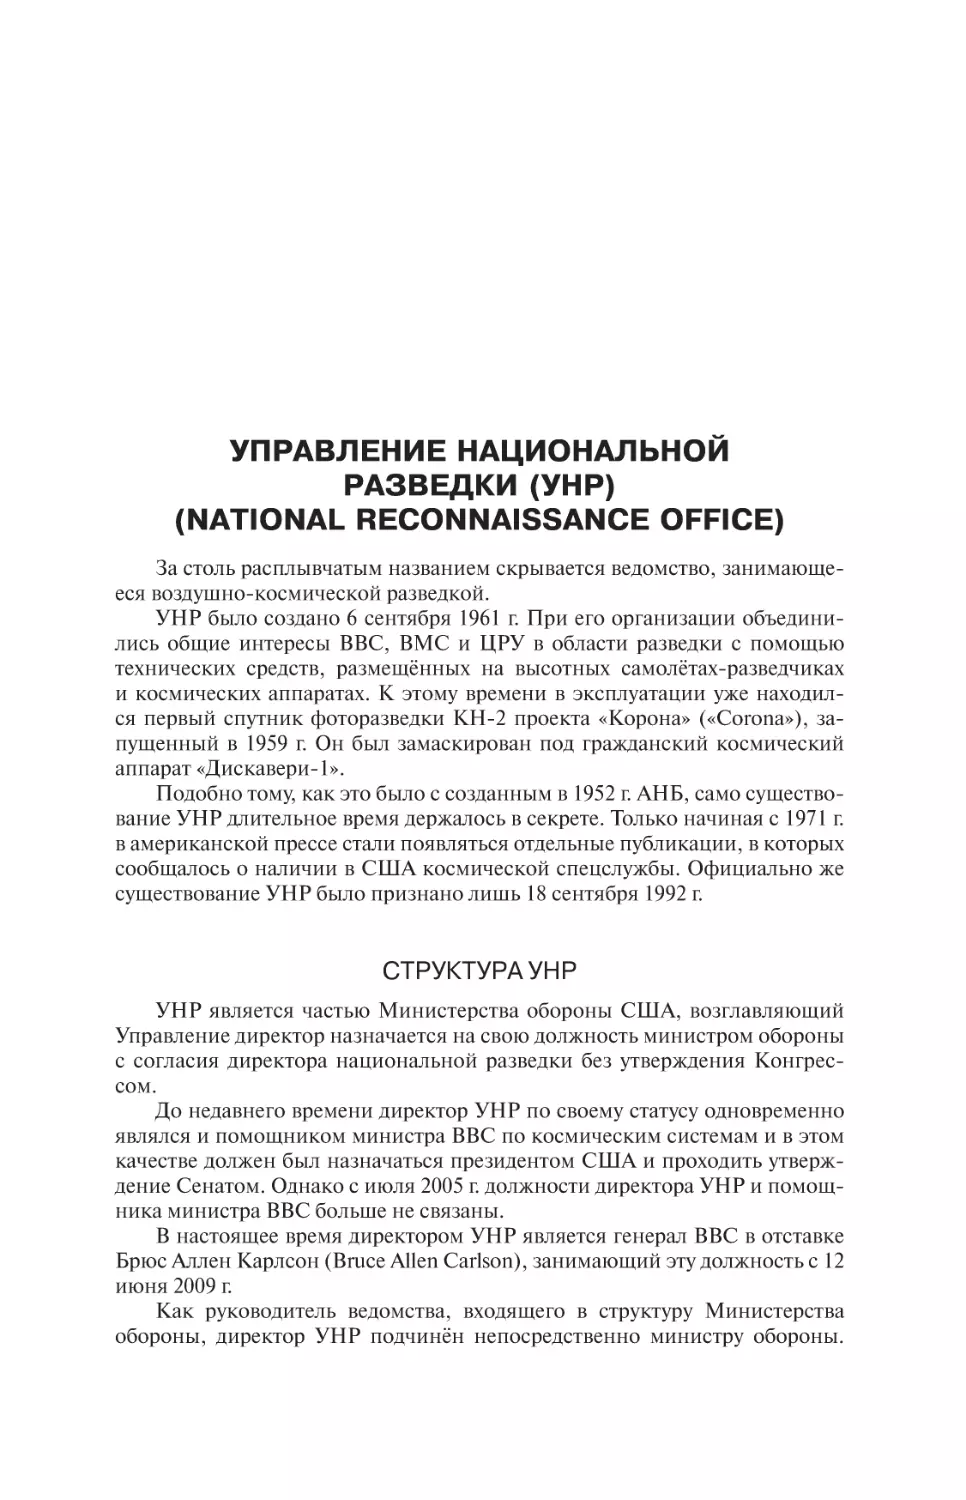 Управление национальной разведки
Структура УНР